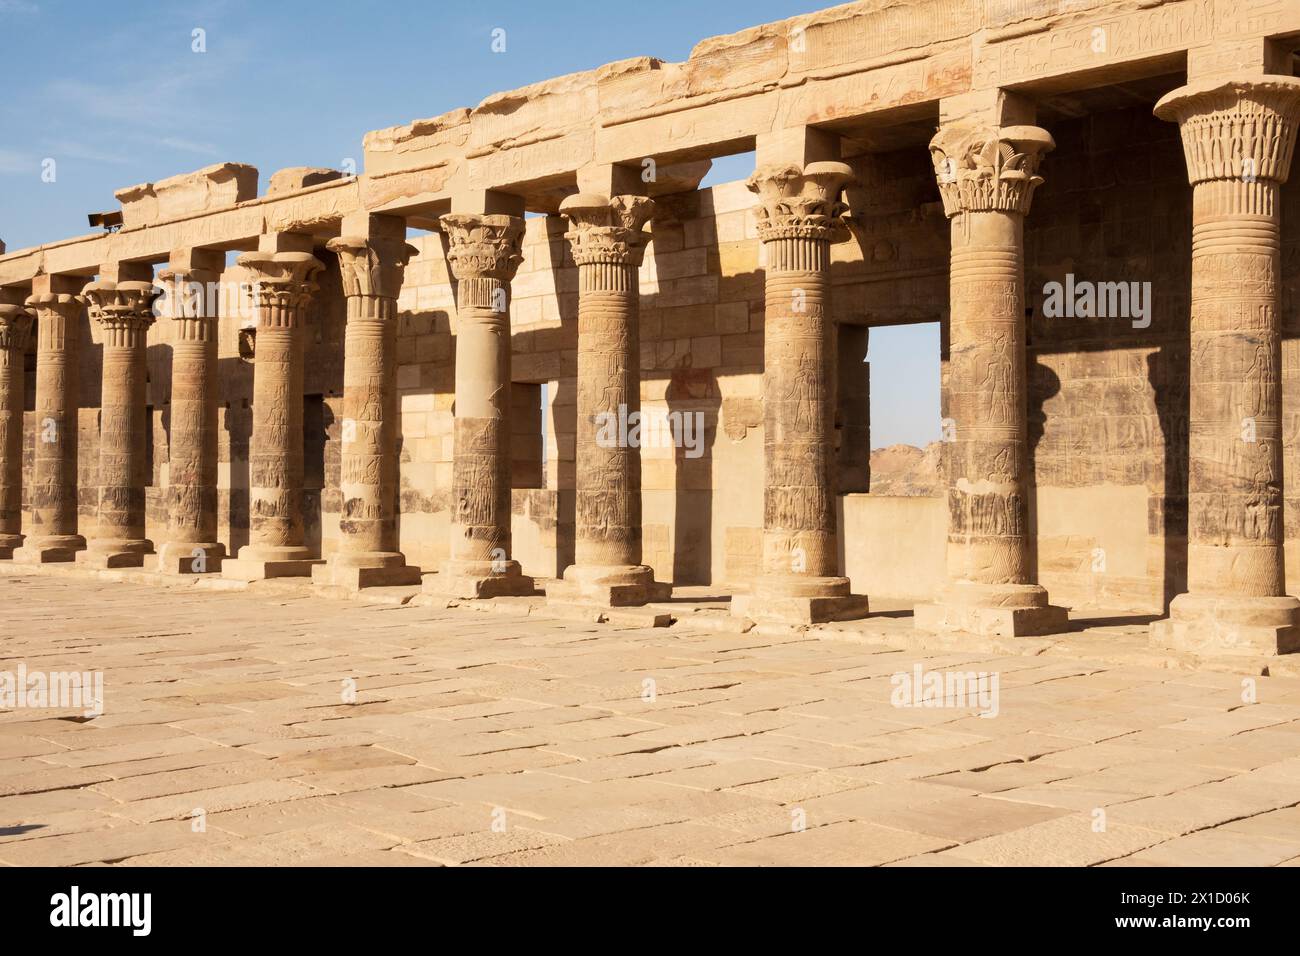 Colonnades dans le temple d'Arsenophis, complexe du temple de Philae, île d'Agilkia, réservoir du barrage d'Assouan. Lieu de sépulture d'Osiris. Égypte Banque D'Images